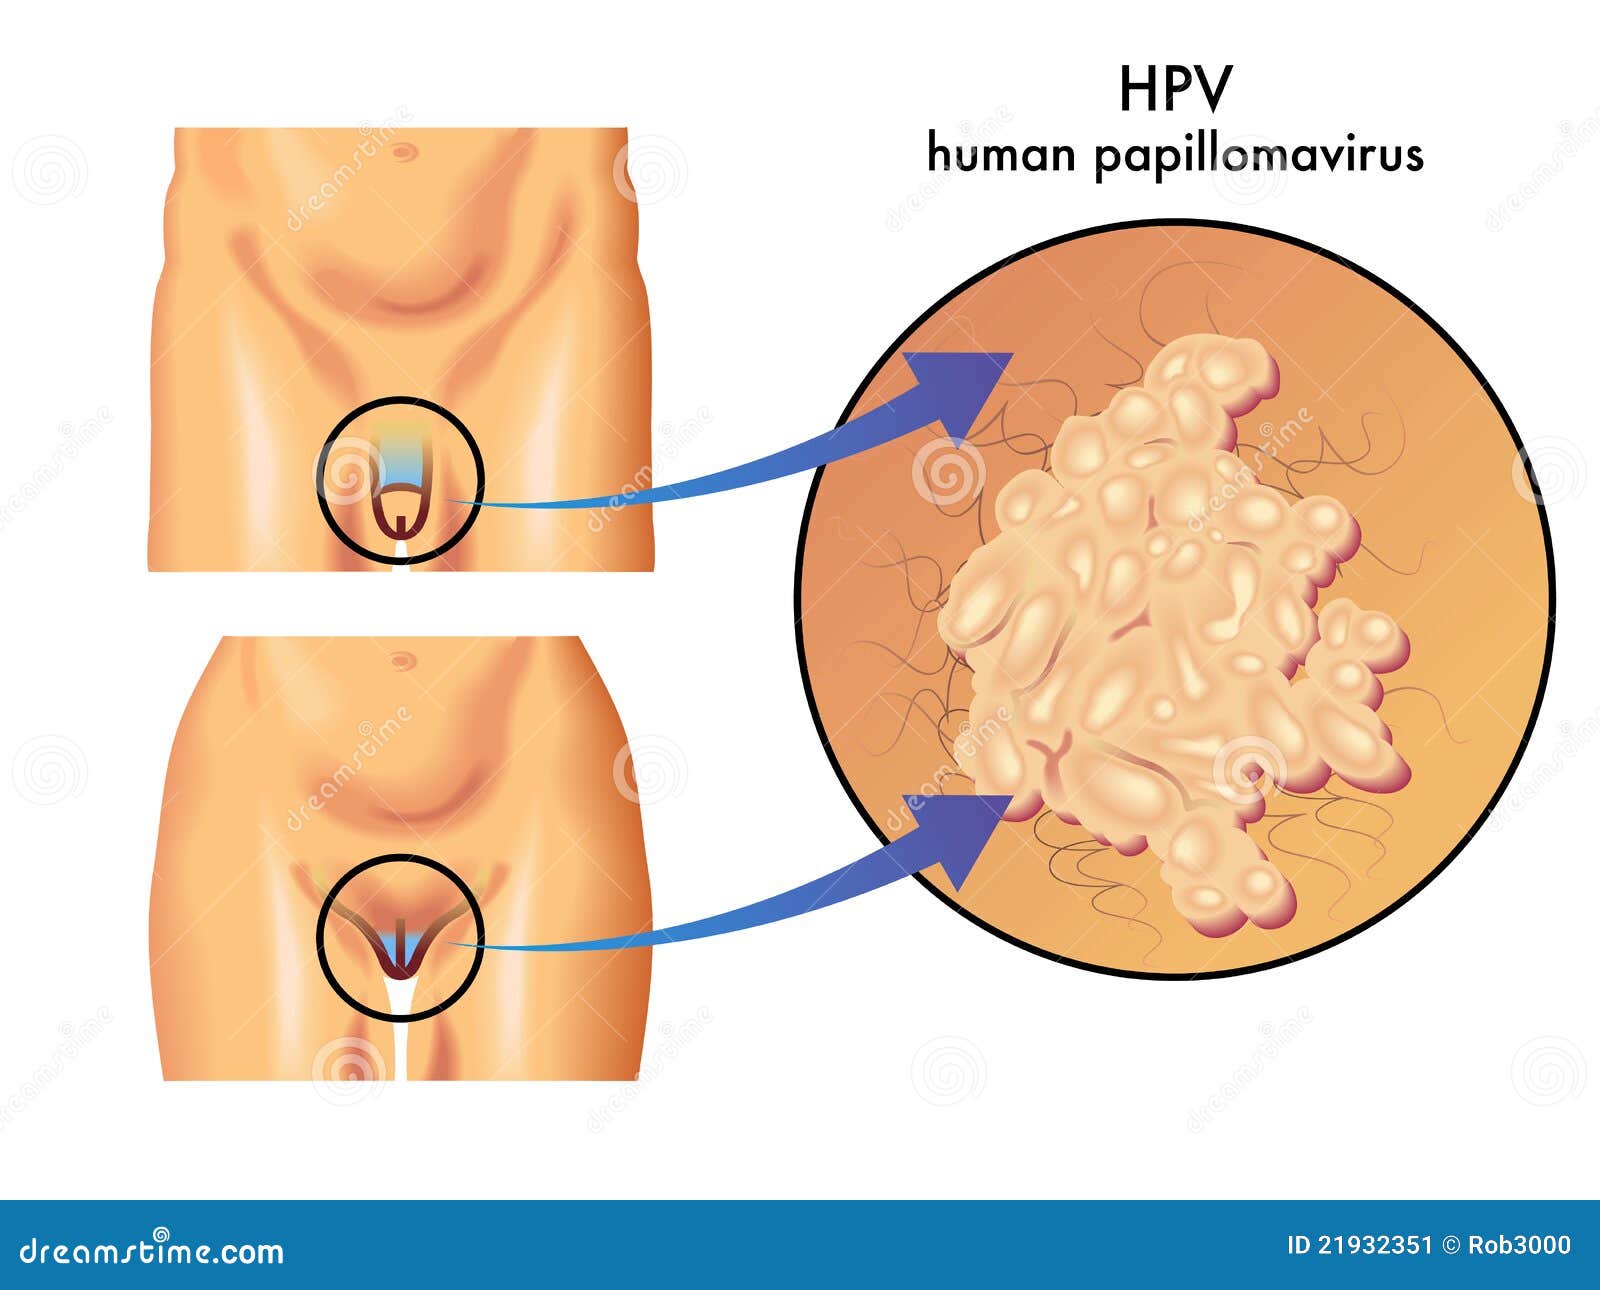 how do you get human papillomavirus)